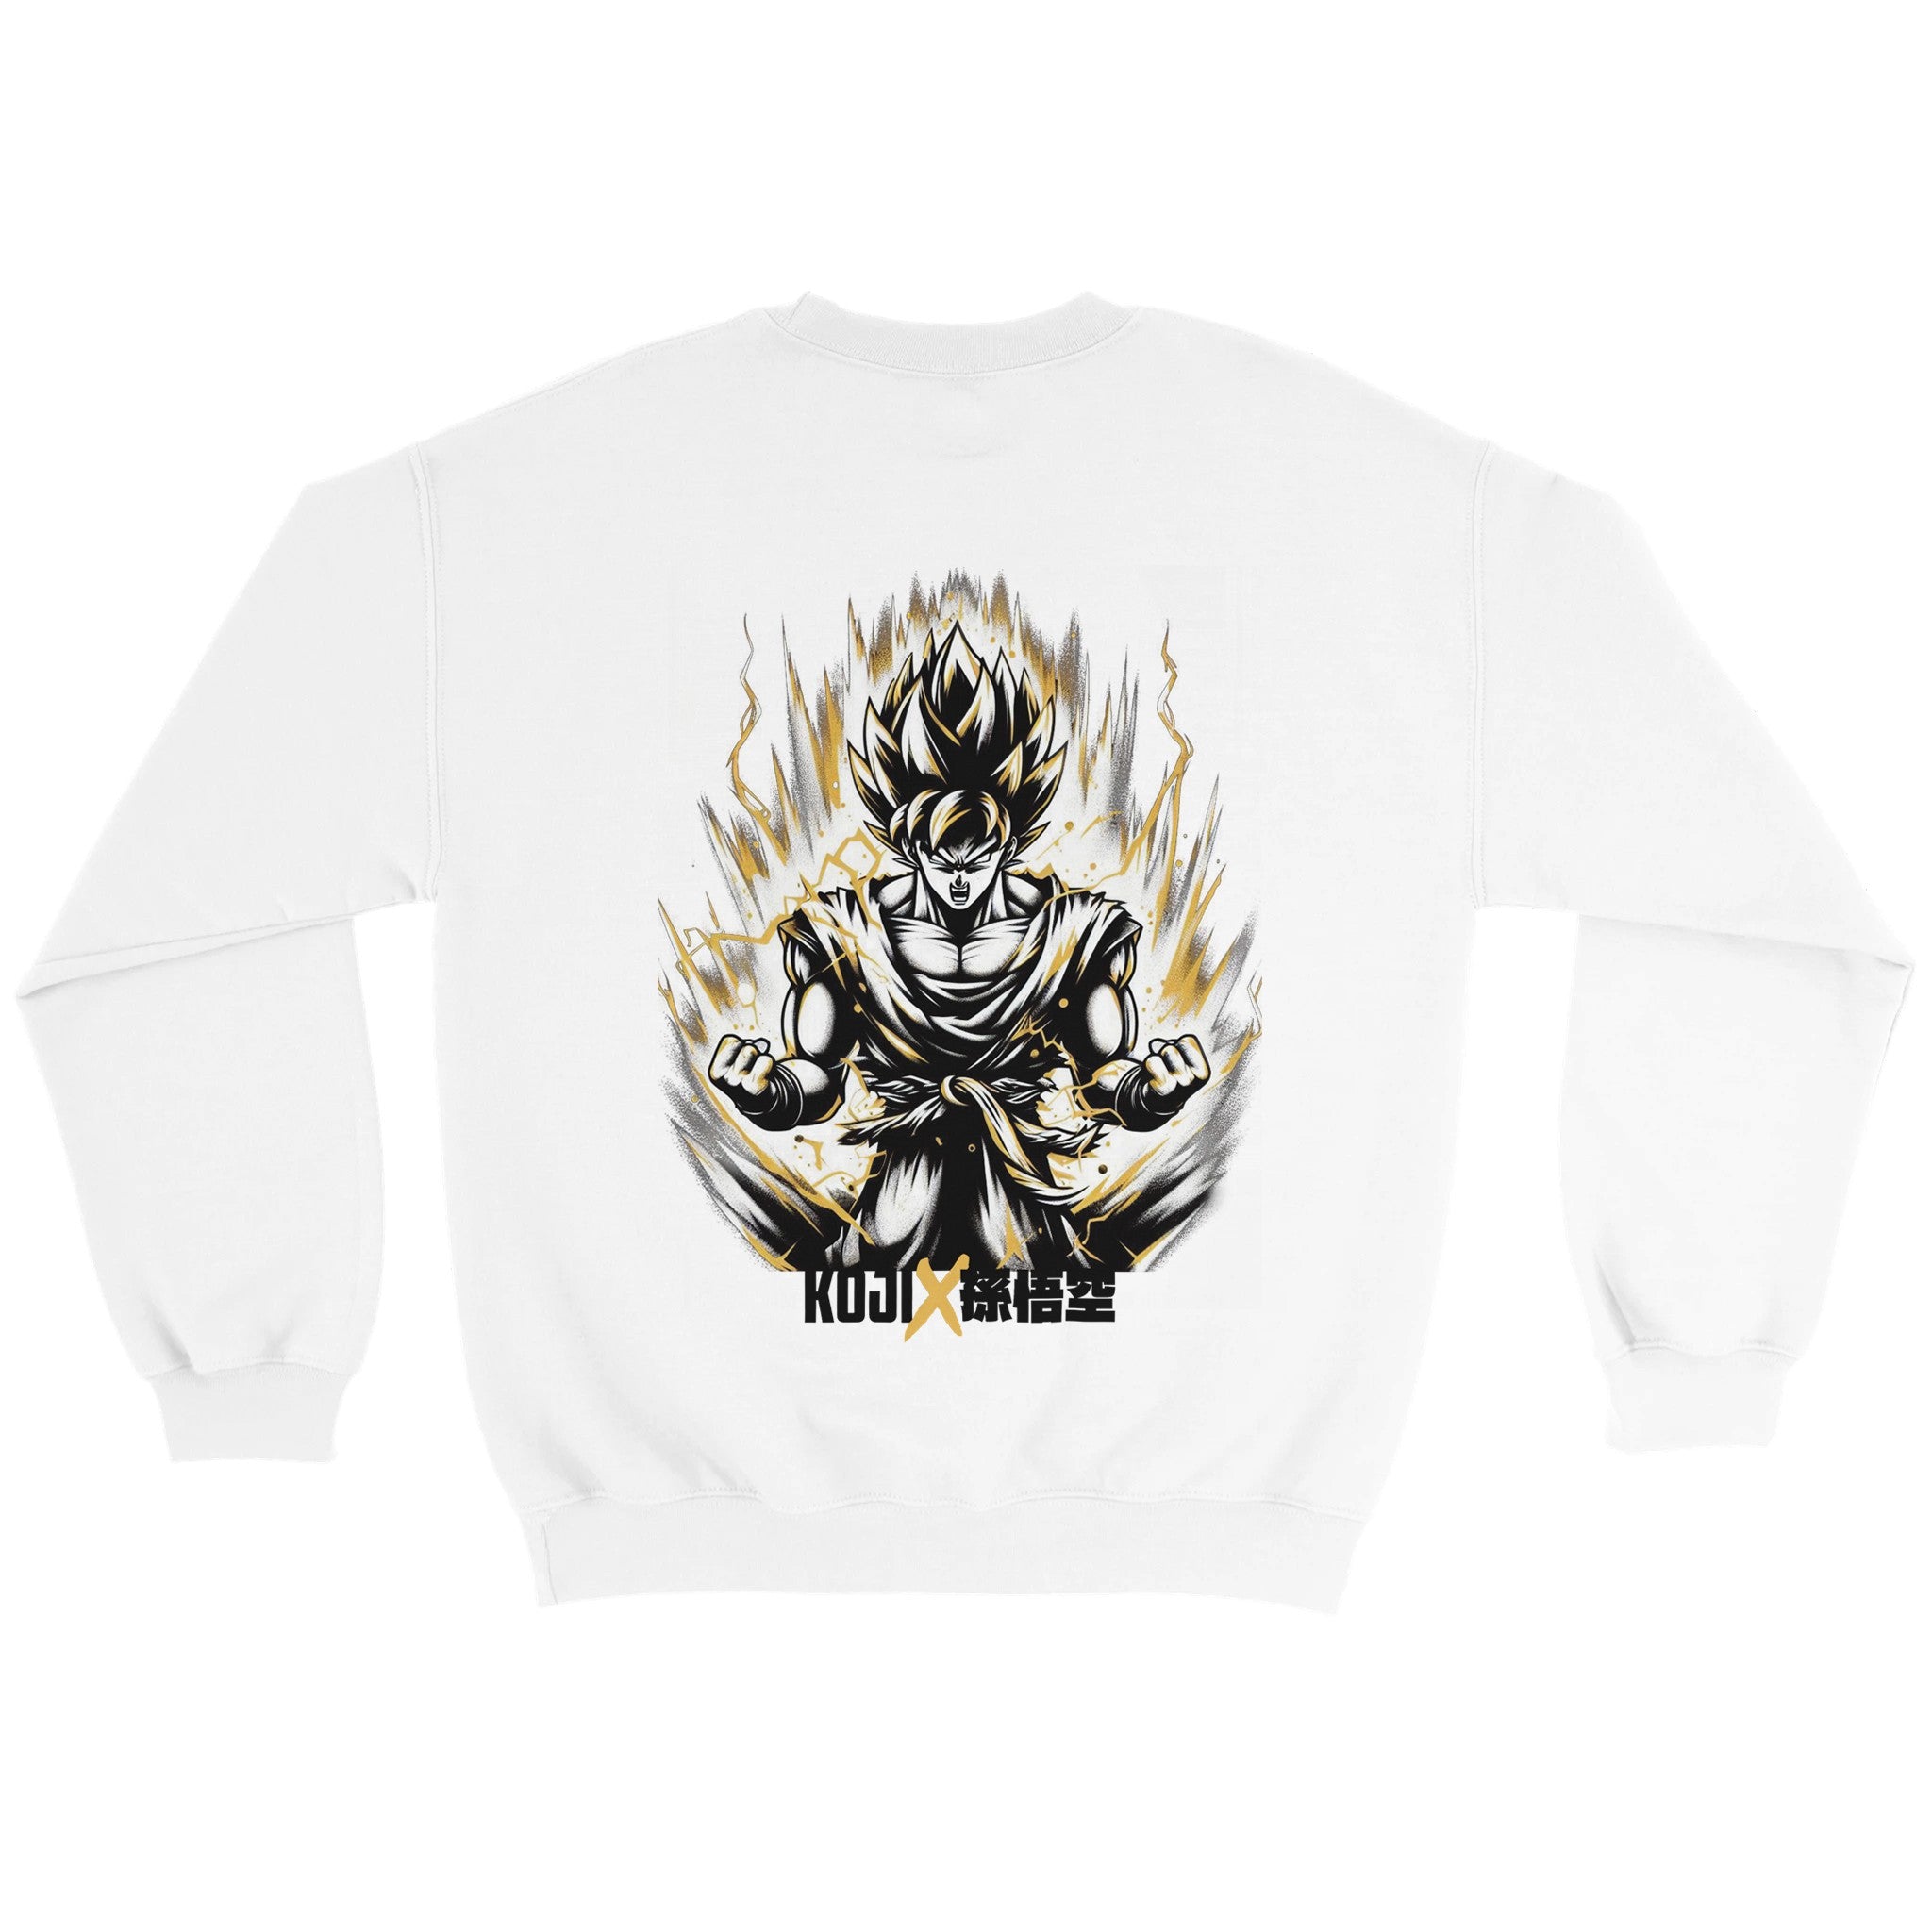 Koji x Dragonball - Saiyan Goku Sweatshirt